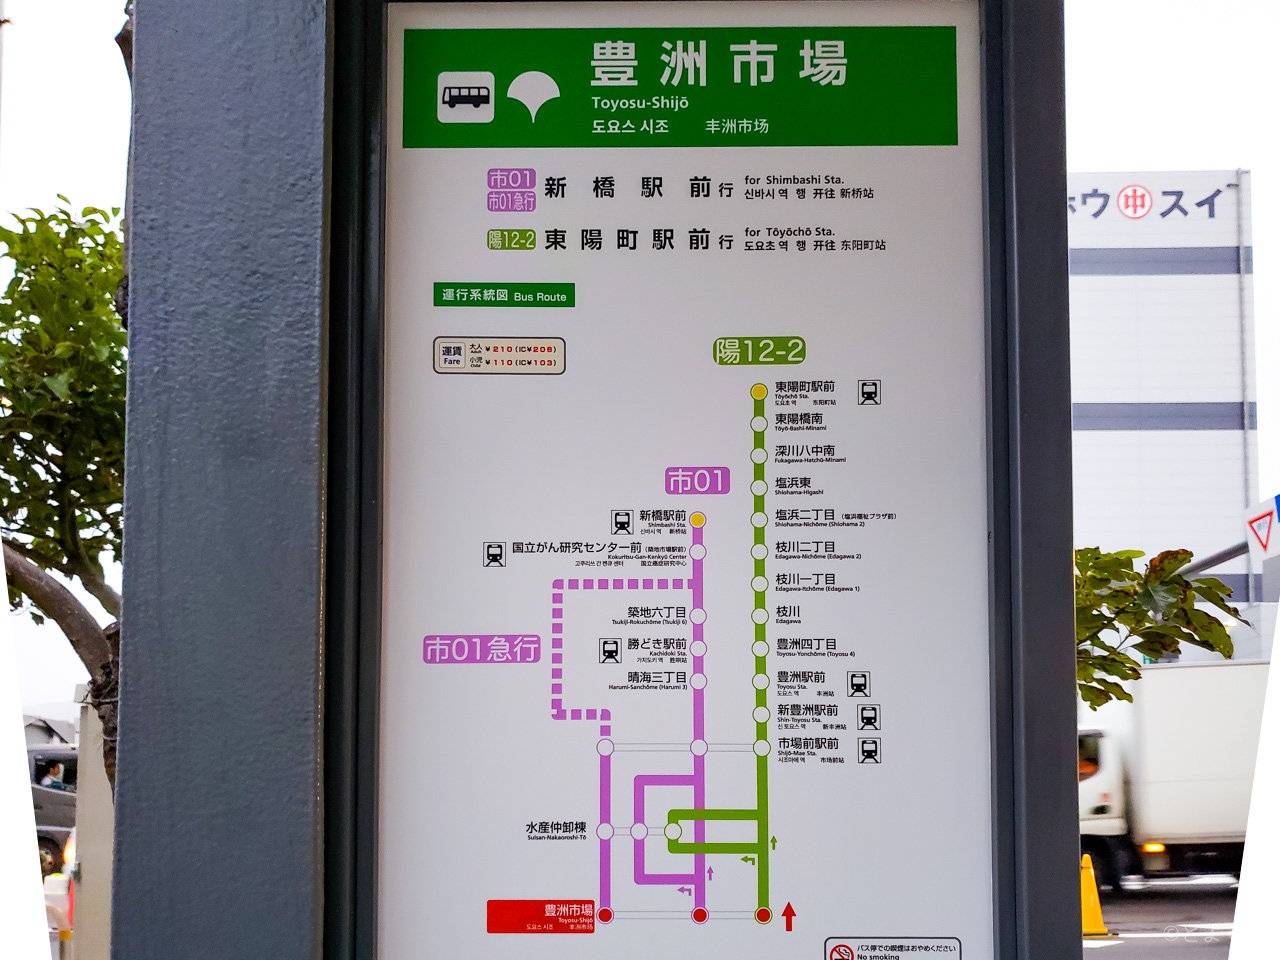 豊洲市場へのアクセス方法 都営バスや電車がおすすめ 豊洲 市場前駅間のゆりかもめ所要時間はわずか3分 自動車は環状2号線なら築地との差は数分 とよすと